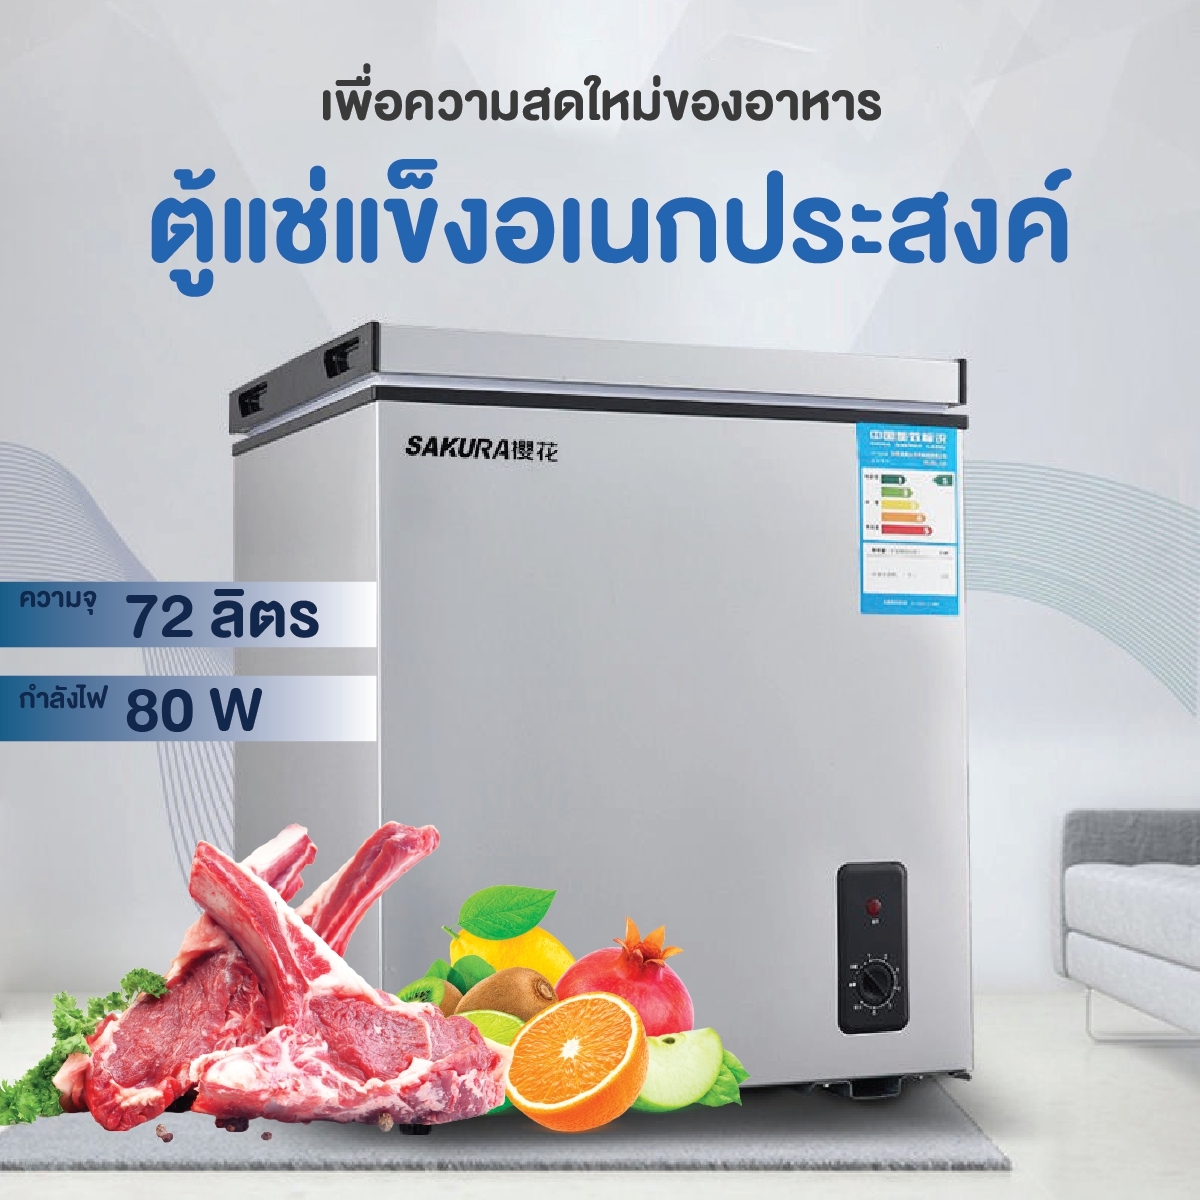 ตู้เย็นแช่แข็ง ตู้เย็นแช่ฟิต ตู้เย็นแช่ฝาบน ตู้แช่แข็ง ตู้เย็นราคา ถูก Freezer ปรับอุณหภูมิได้ น้ำหนักเบา ราคาถูก [DAFA]